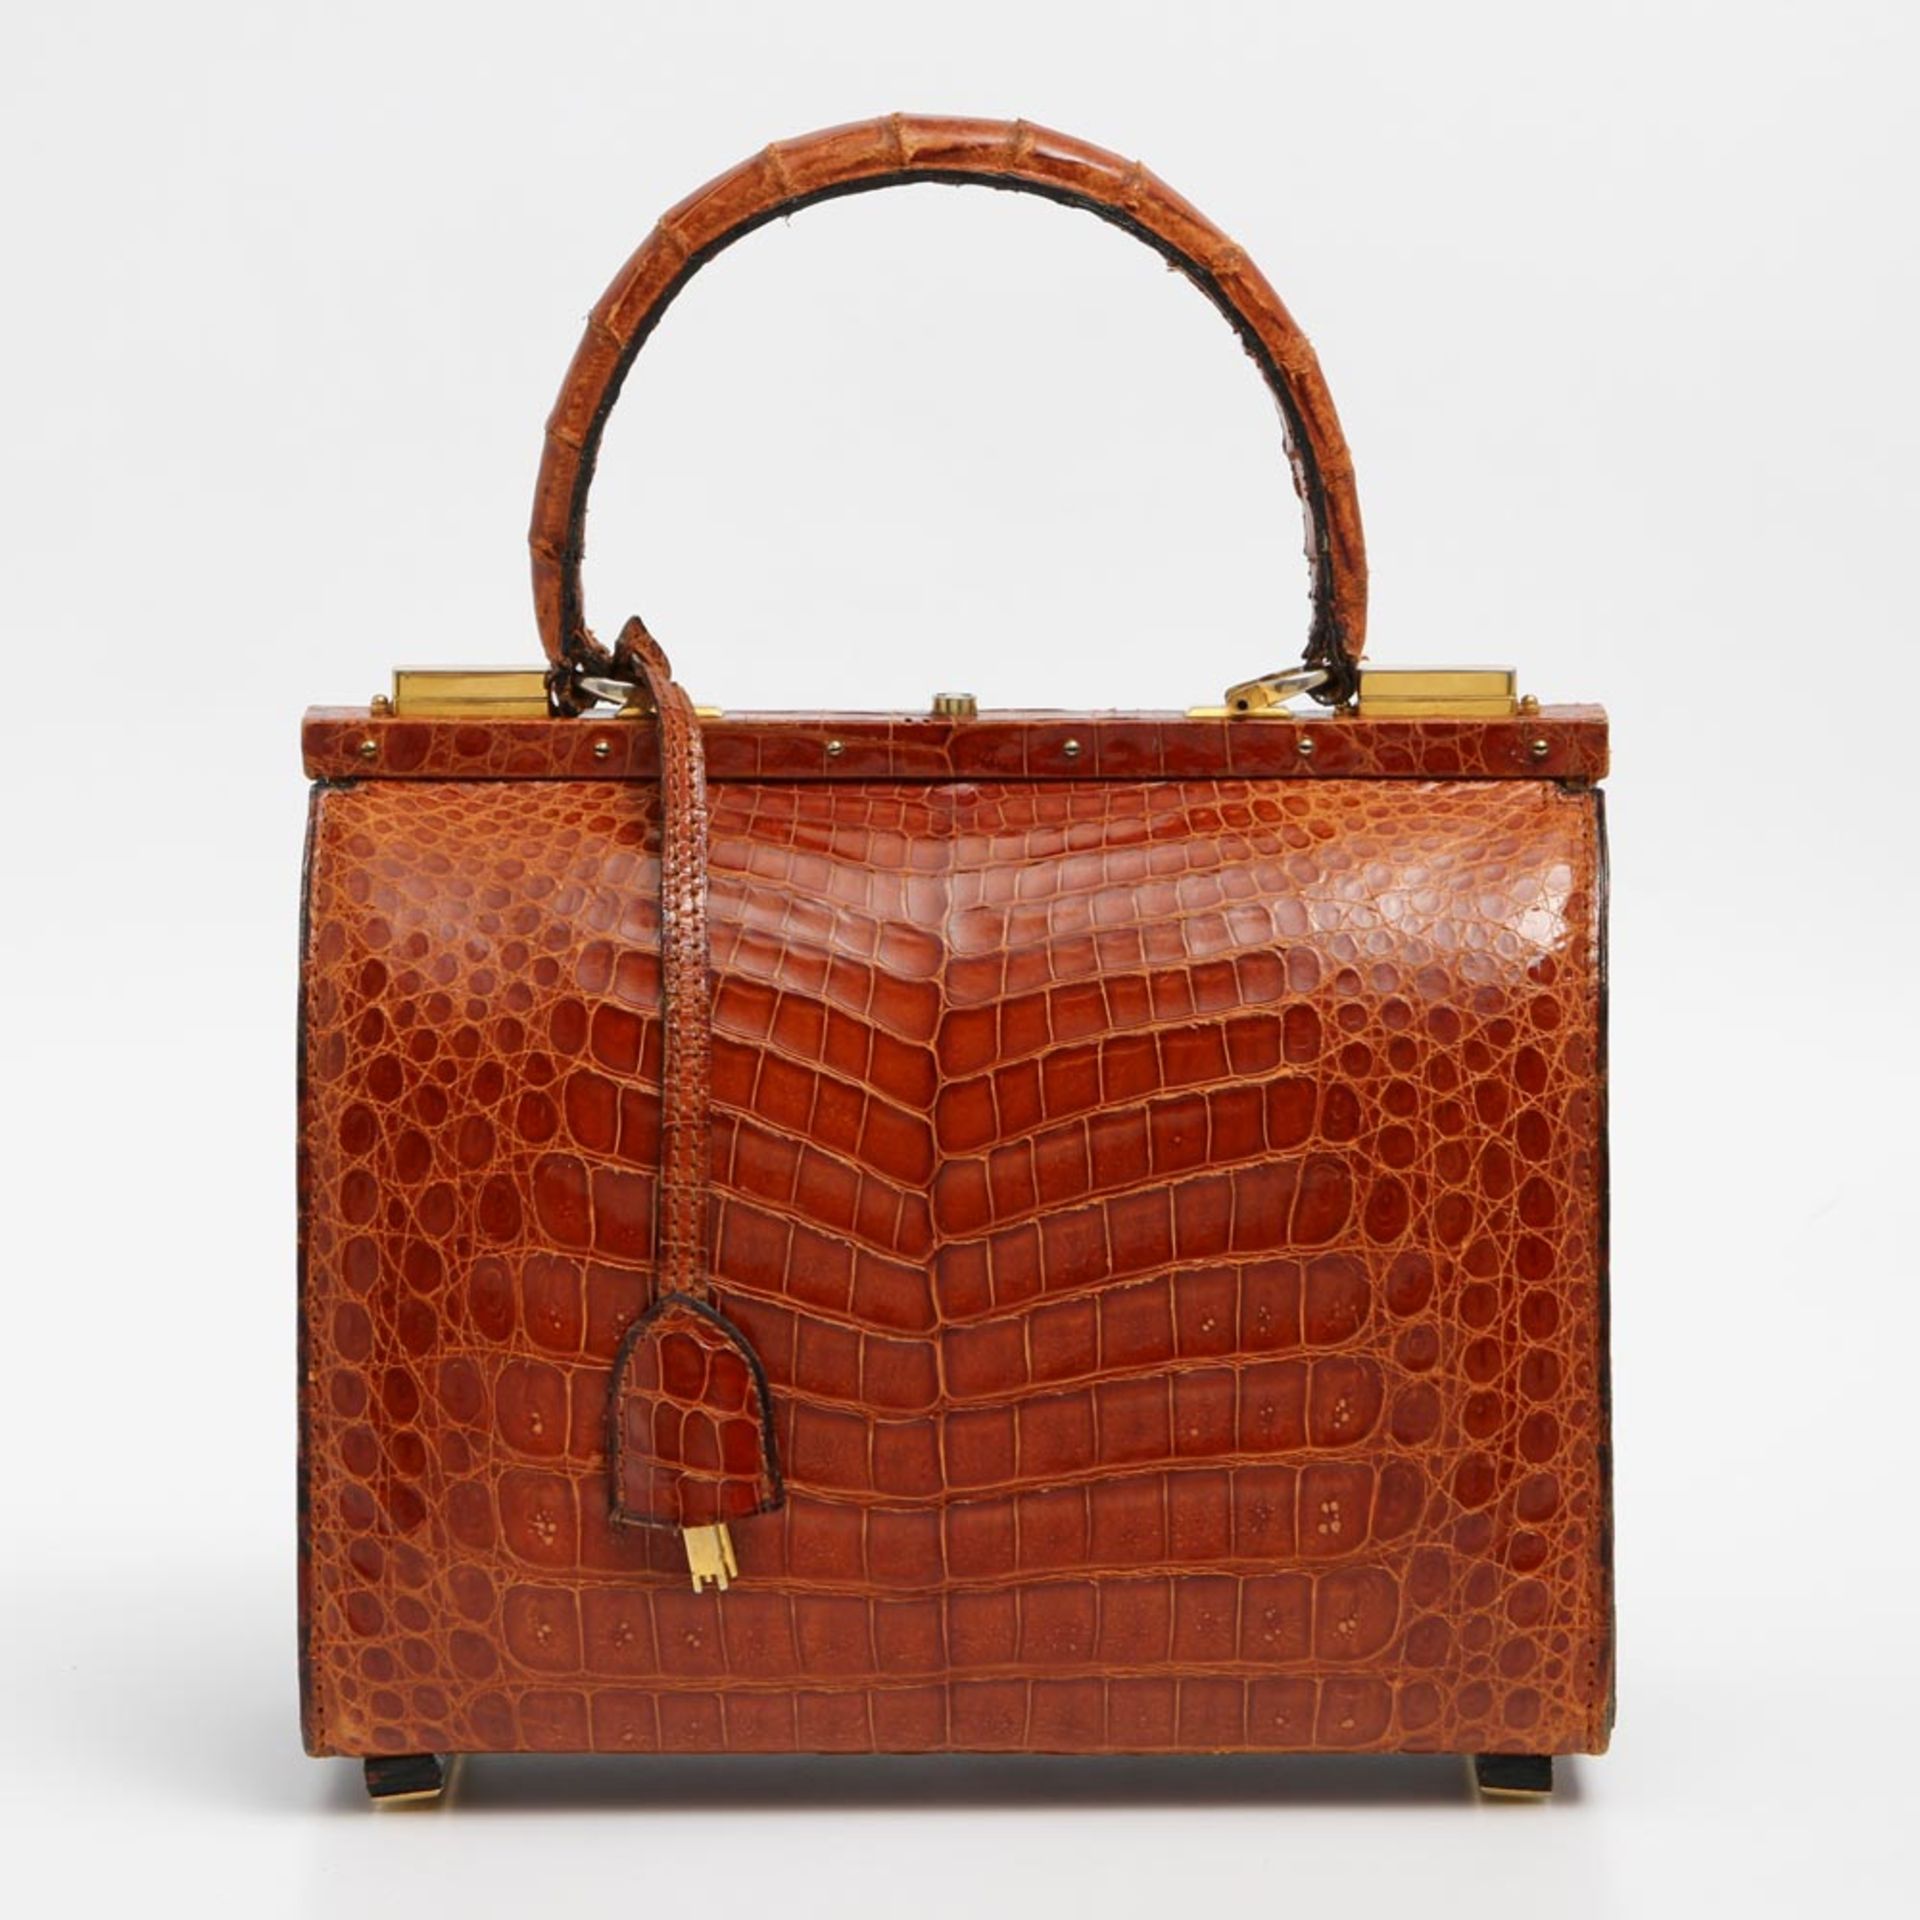 Aparte Krokodillederhandtasche, Herstellung: Mitte der 1960er Jahre. Orangebraunes Leder des